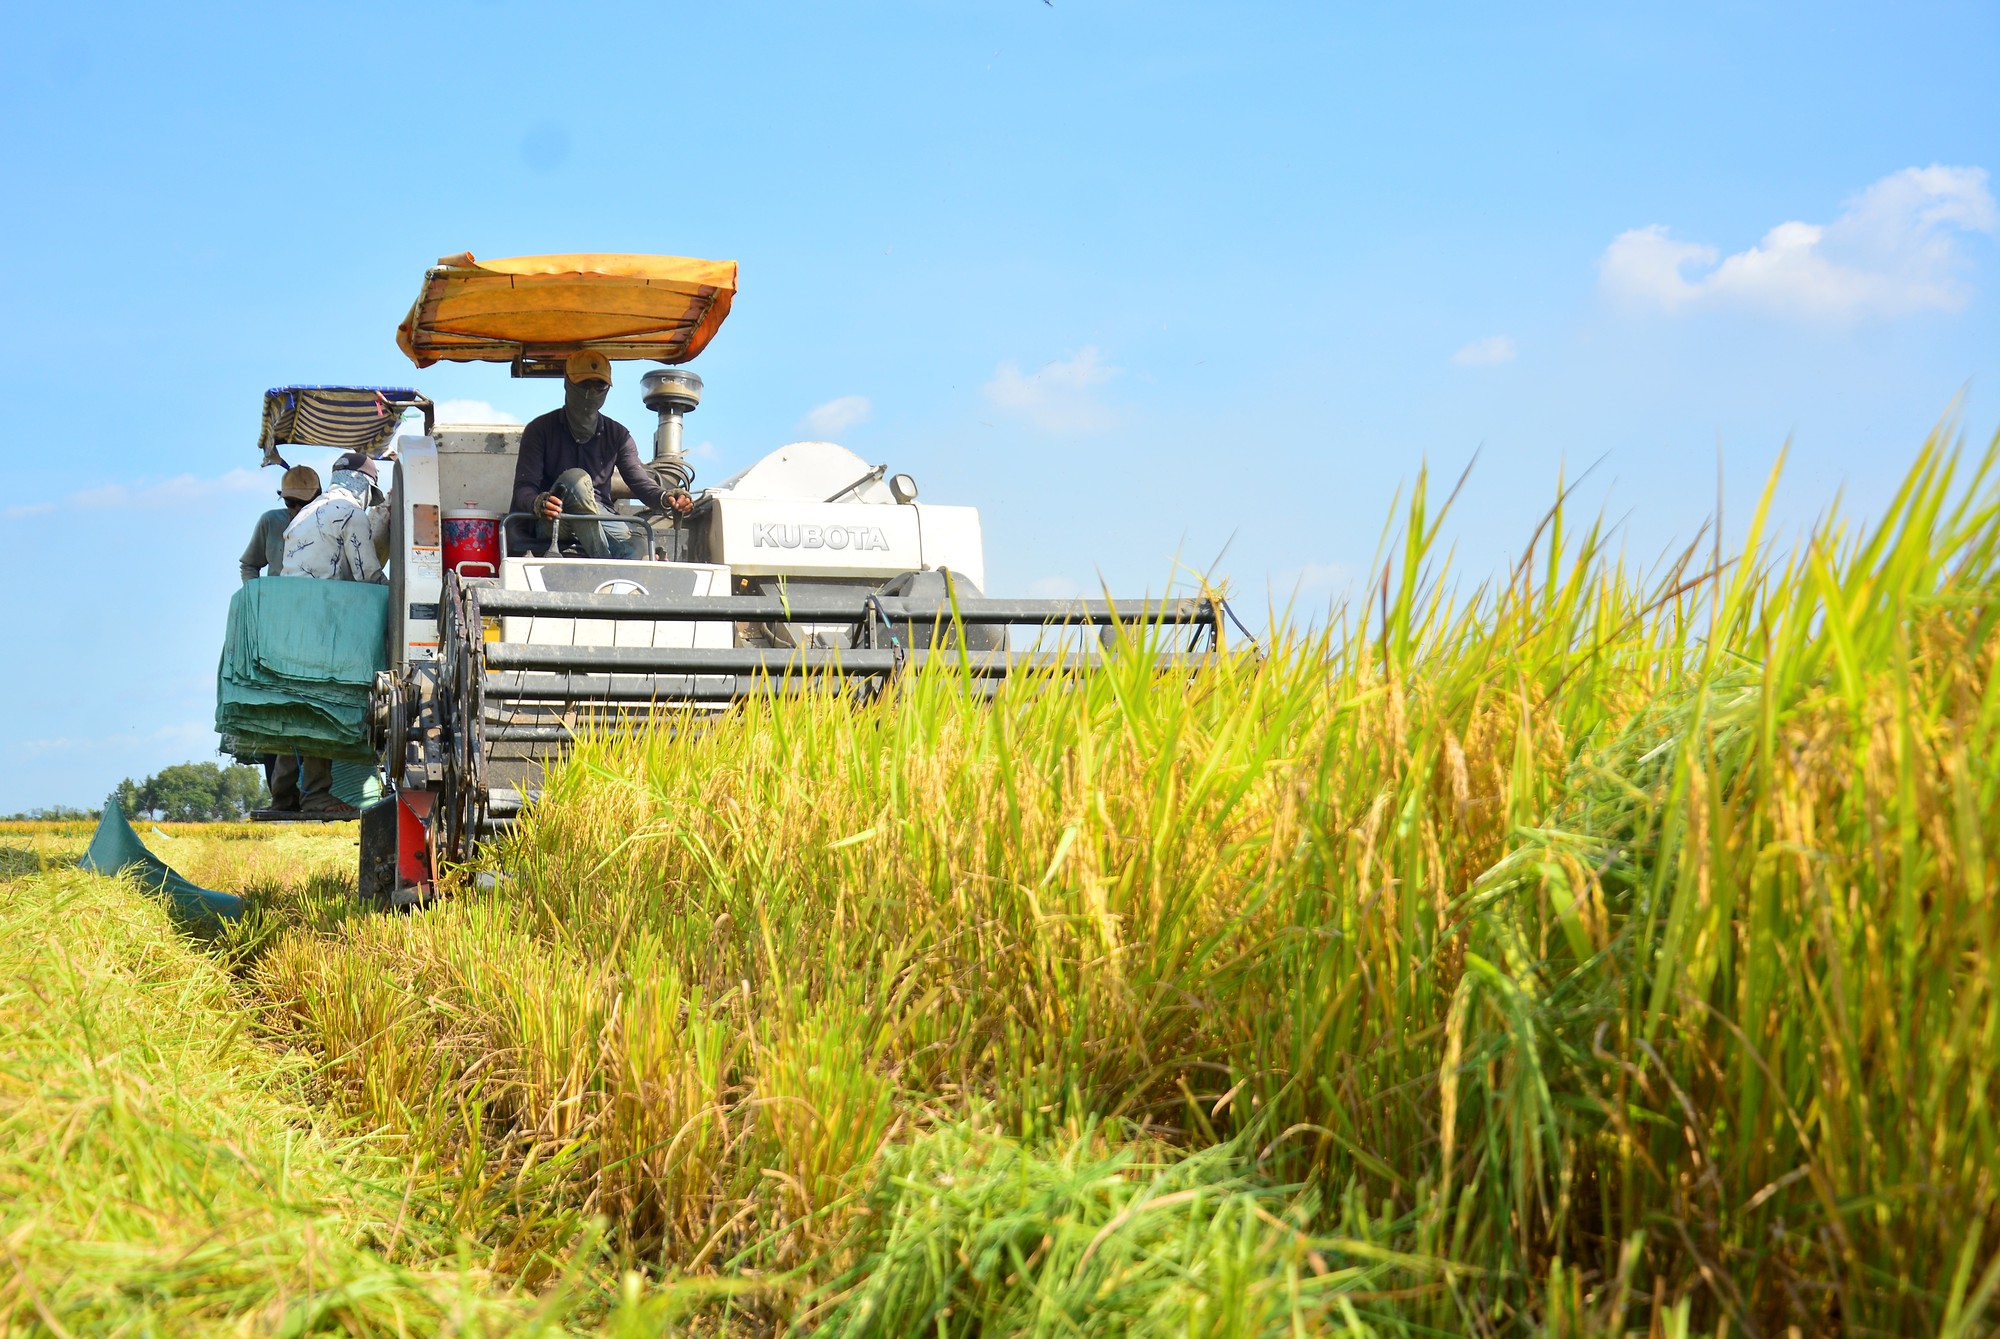 Cập nhật giá gạo mới nhất ngày 14/8: Lúa neo cao, gạo giảm 200 đồng/kg, thị trường giao dịch chậm - Ảnh 5.